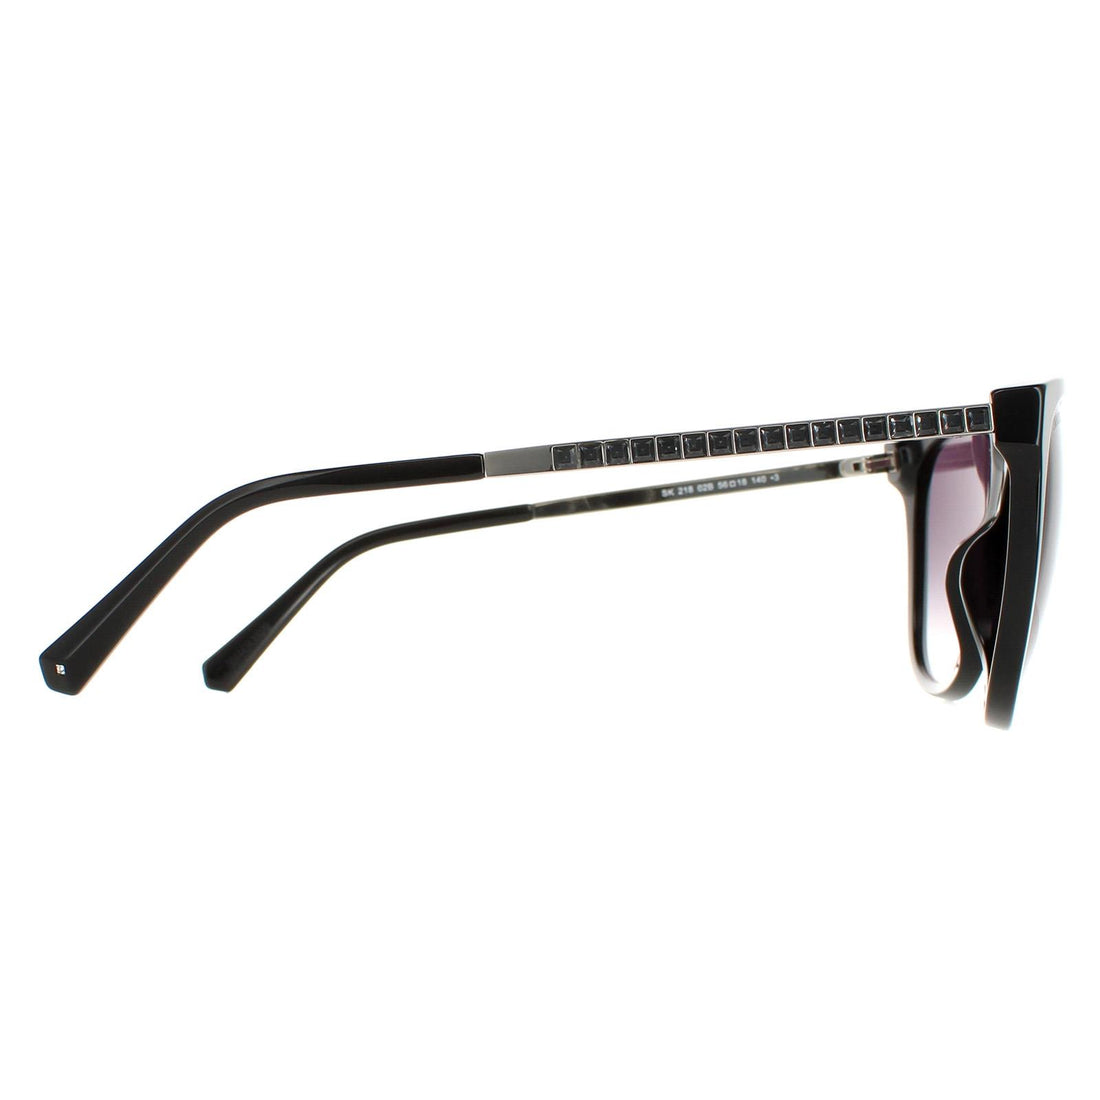 Swarovski SK0218 Sunglasses